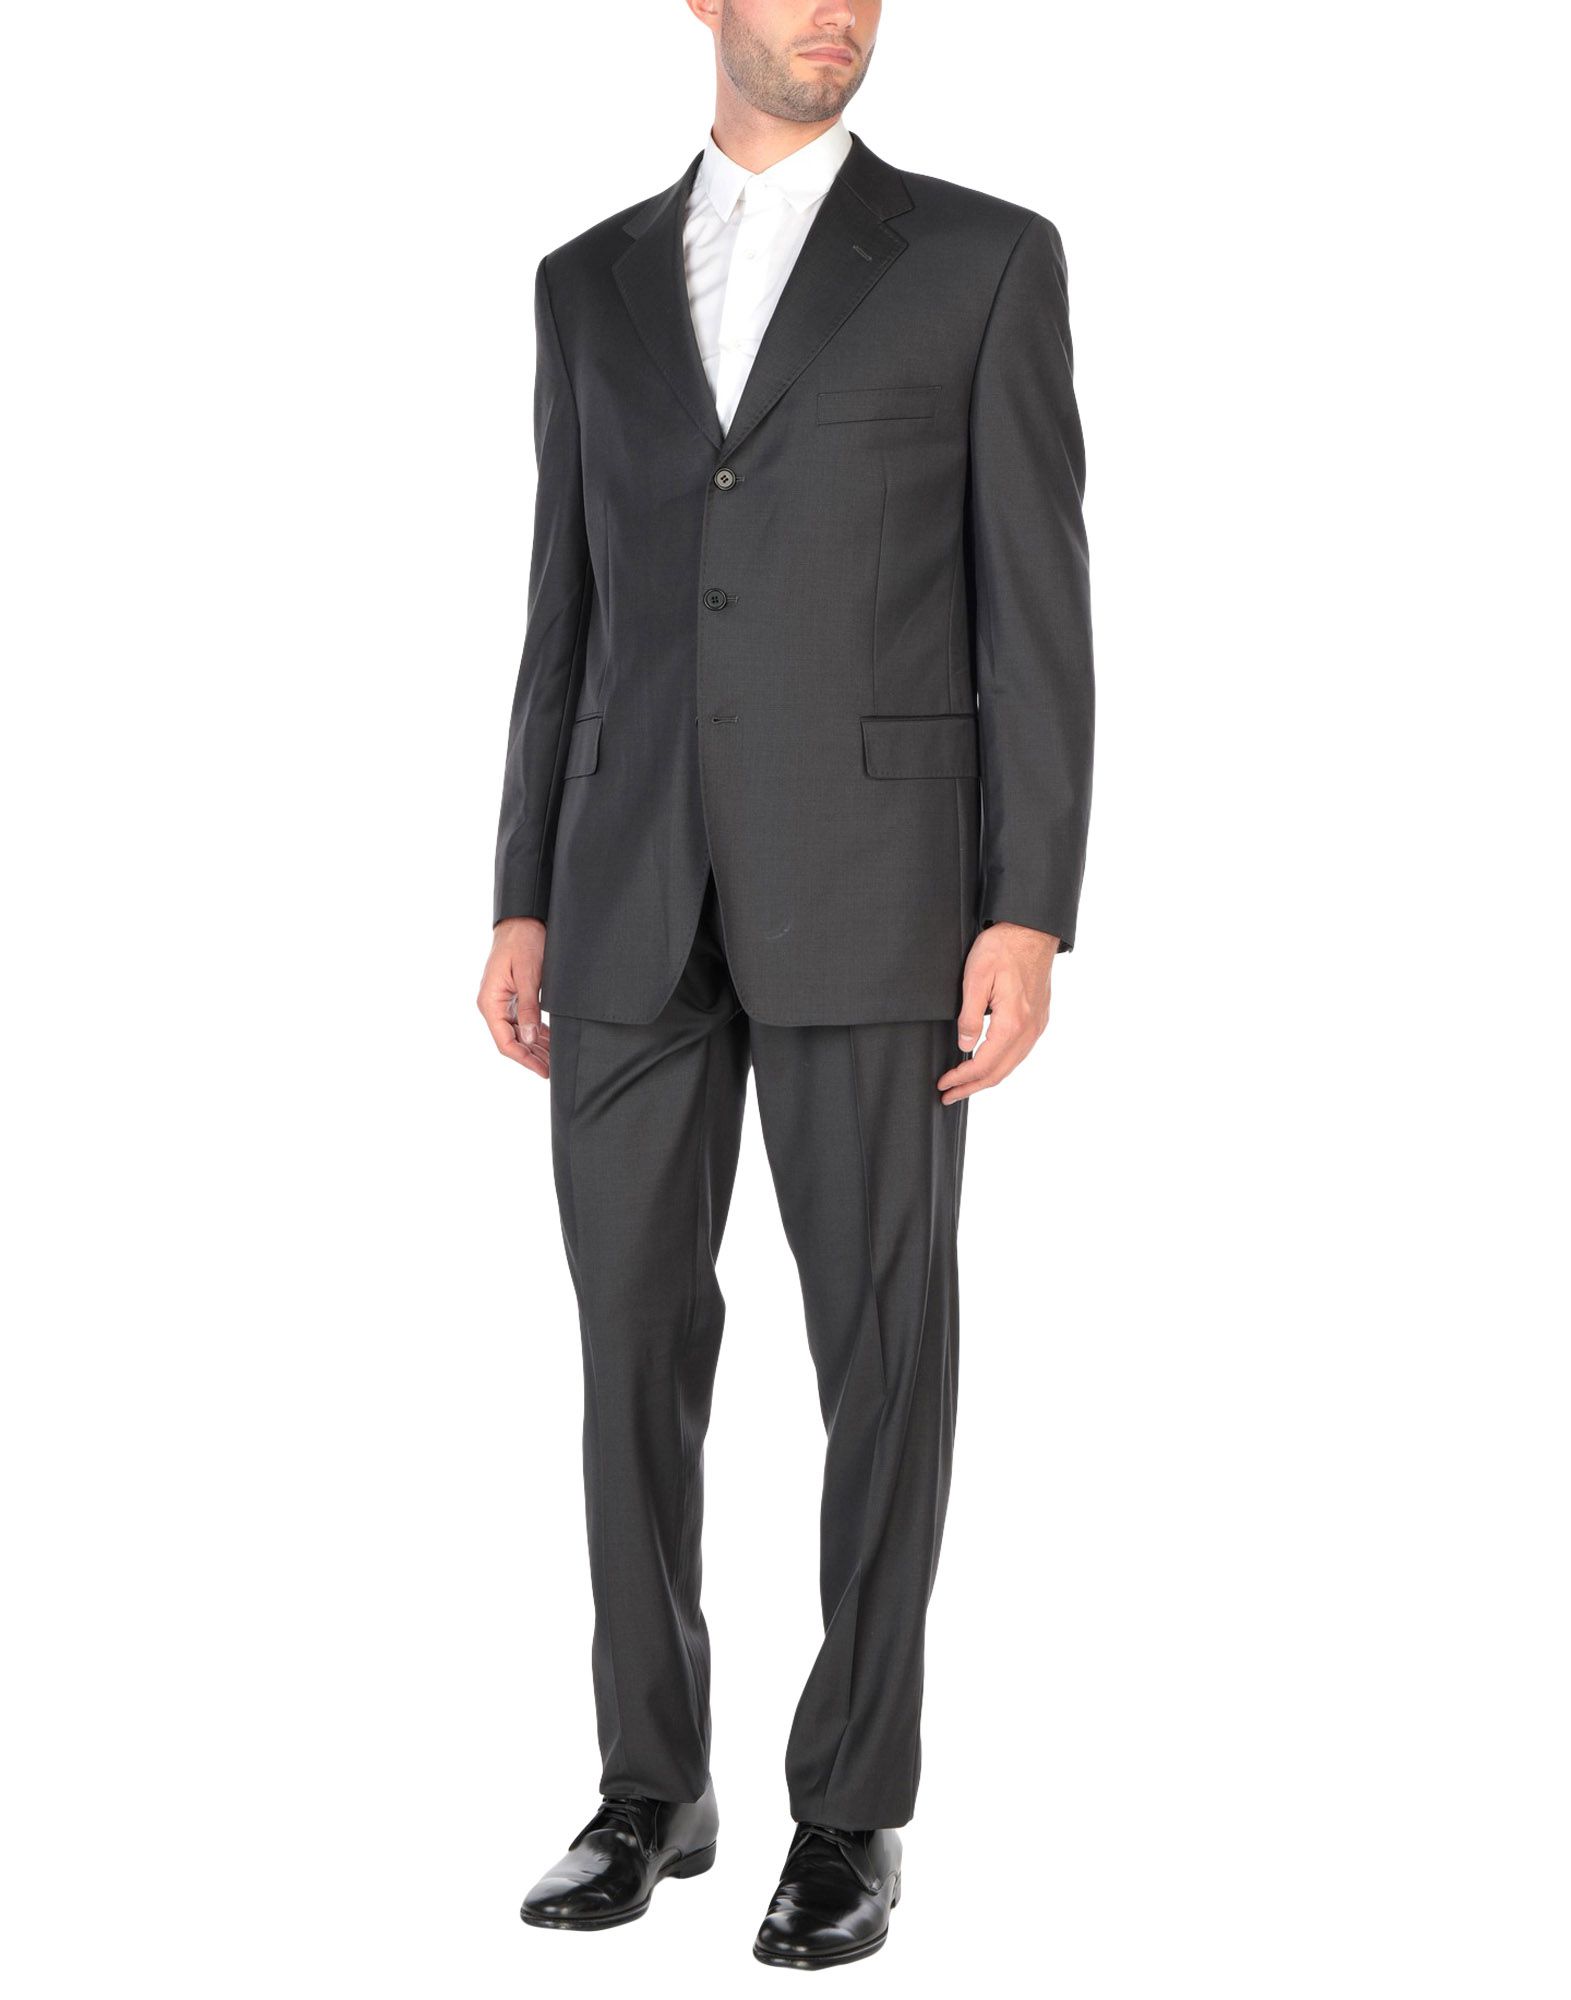 《送料無料》CANALI メンズ スーツ スチールグレー 54 バージンウール 100%